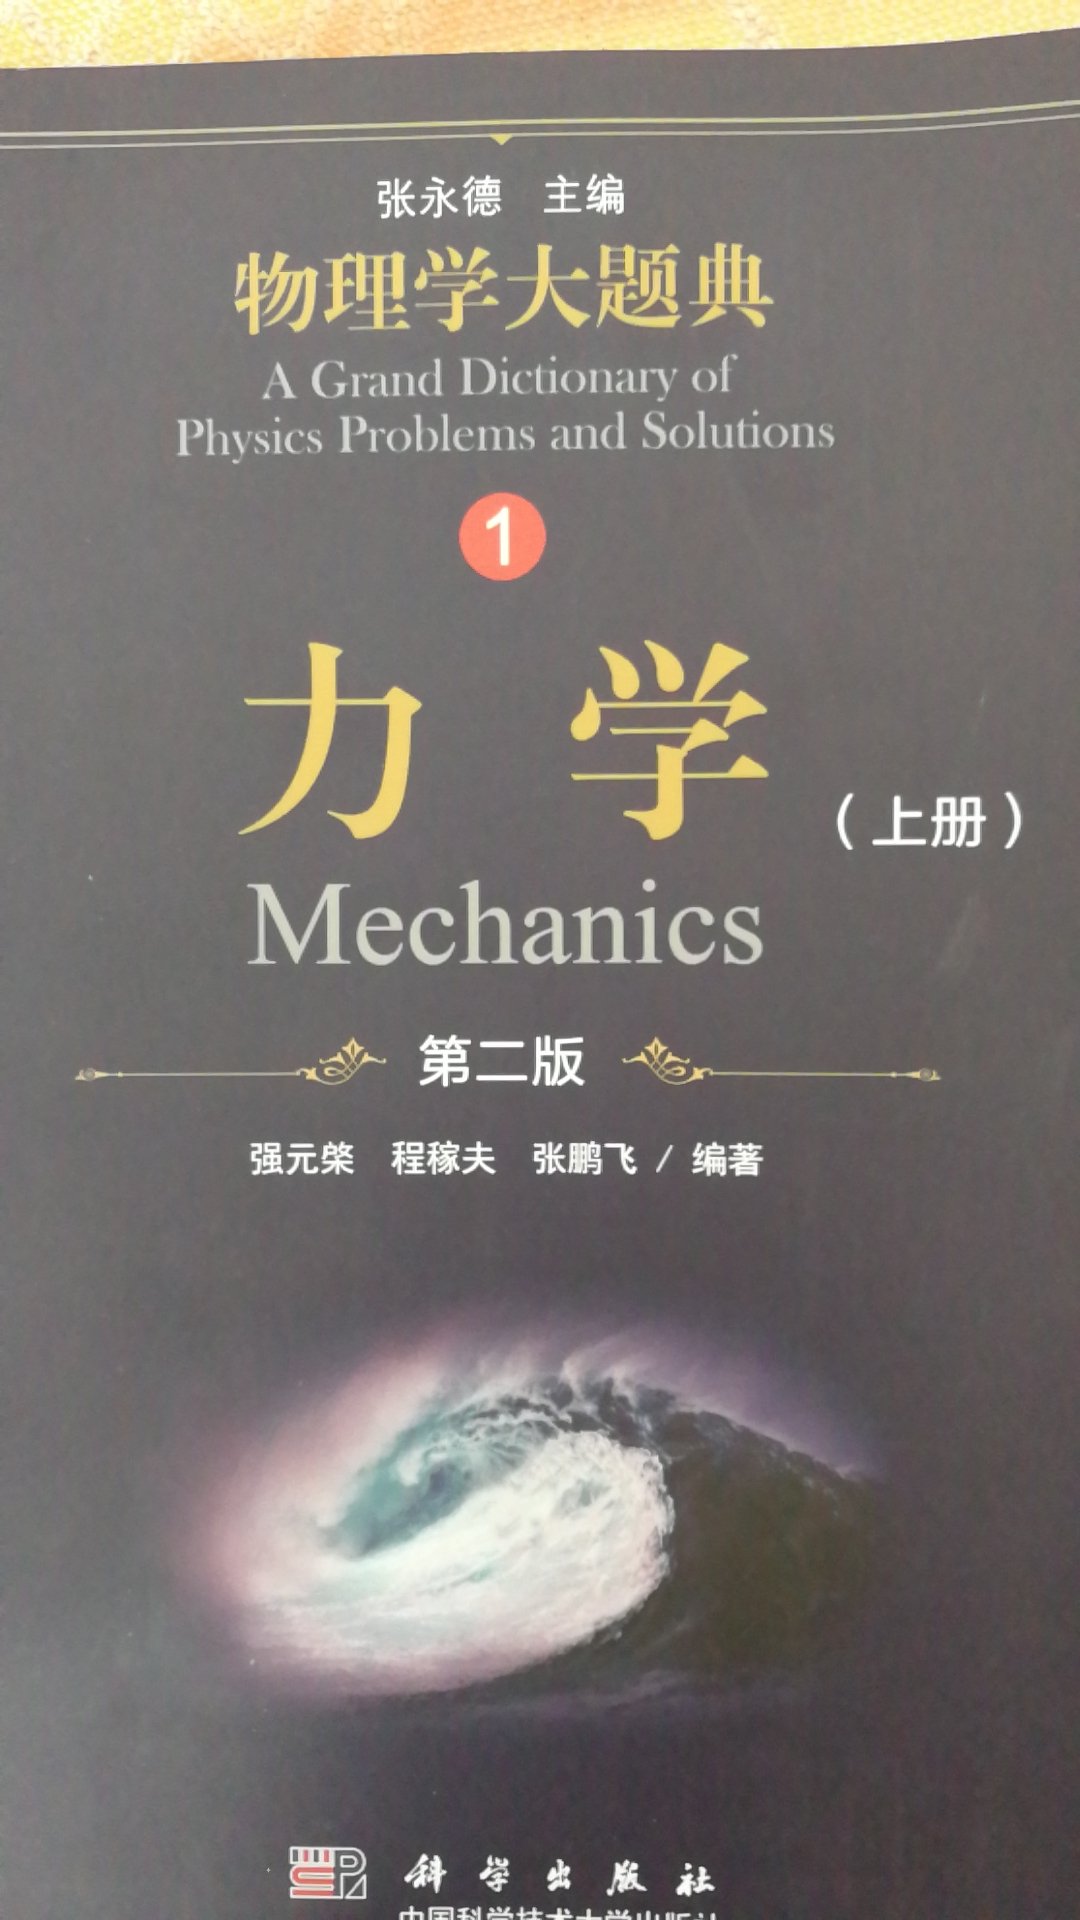 物理学大题典，是很好的一本物理专业参考书！